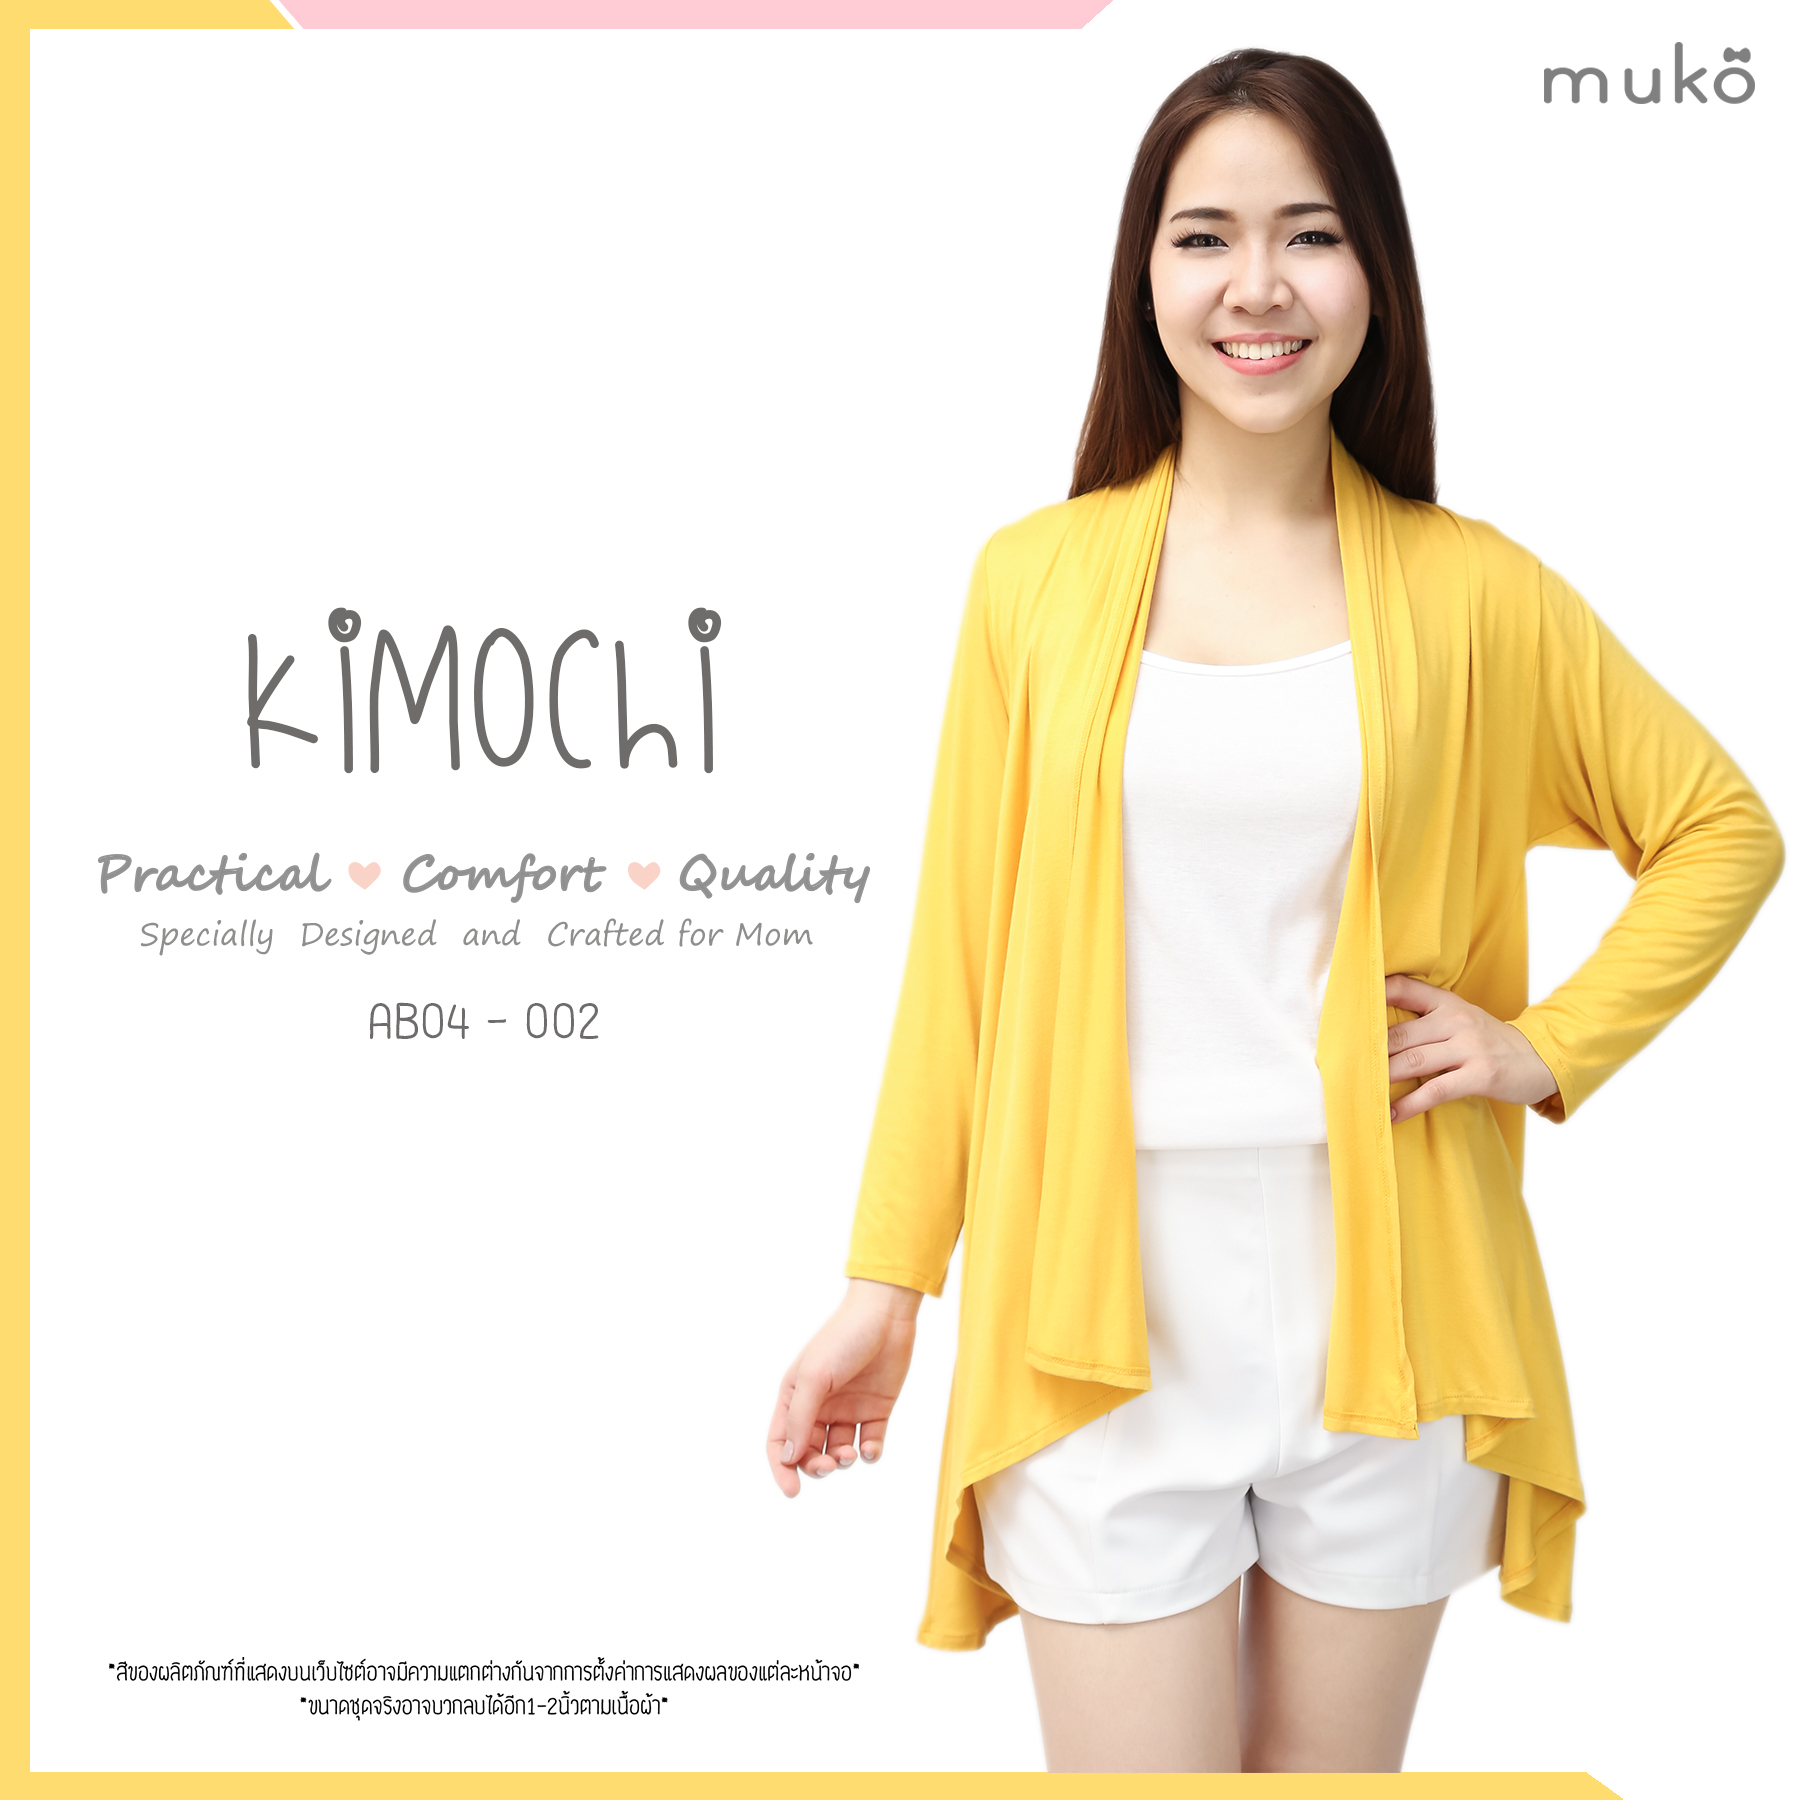 Muko Kimochi เสื้อคลุมท้อง AB04-002 เหลือง